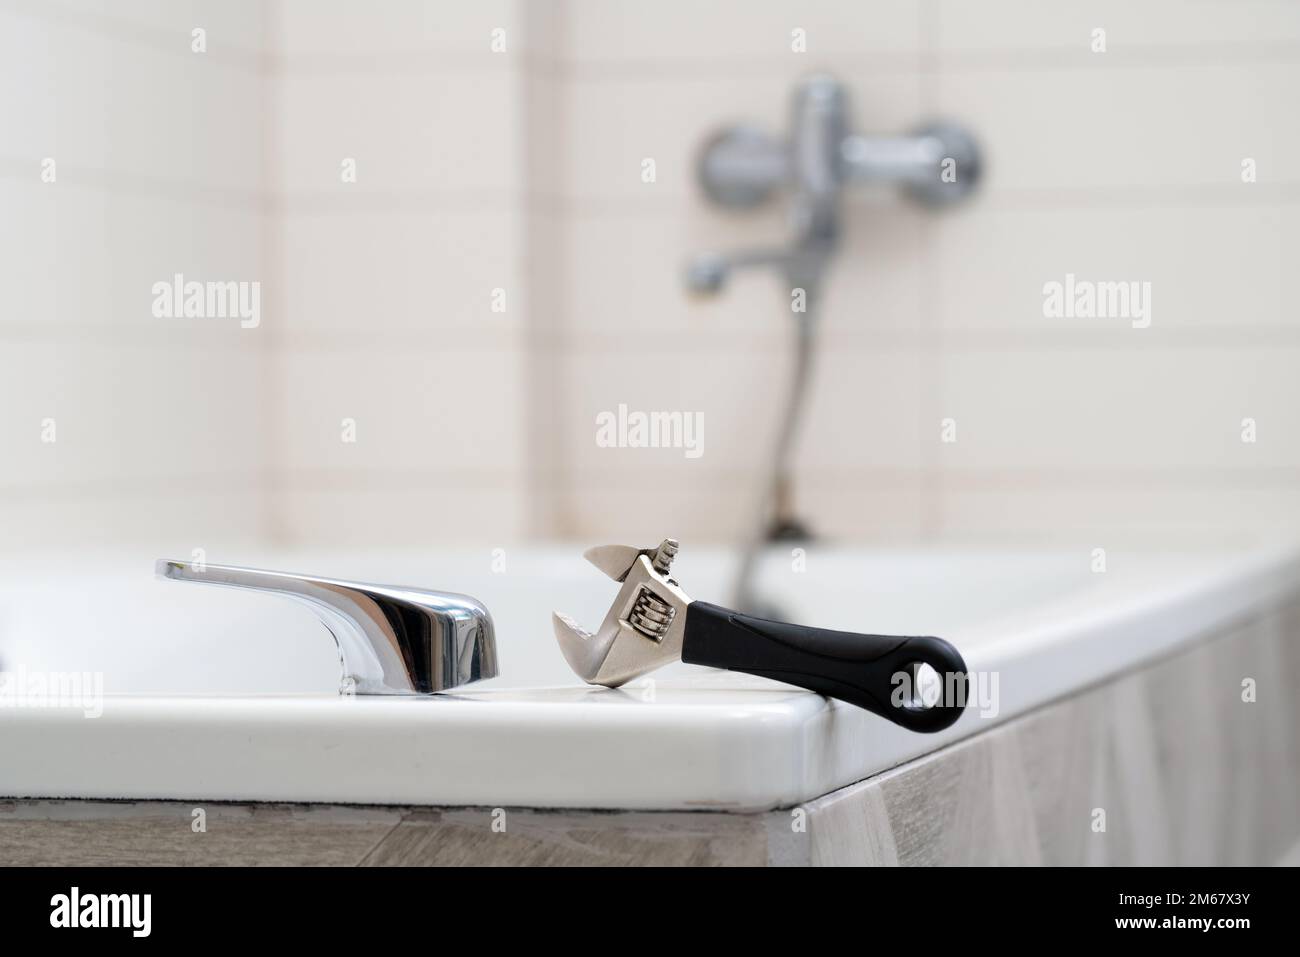 https://c8.alamy.com/comp/2M67X3Y/leaking-shower-faucet-broken-bathtub-handle-emergency-repair-2M67X3Y.jpg